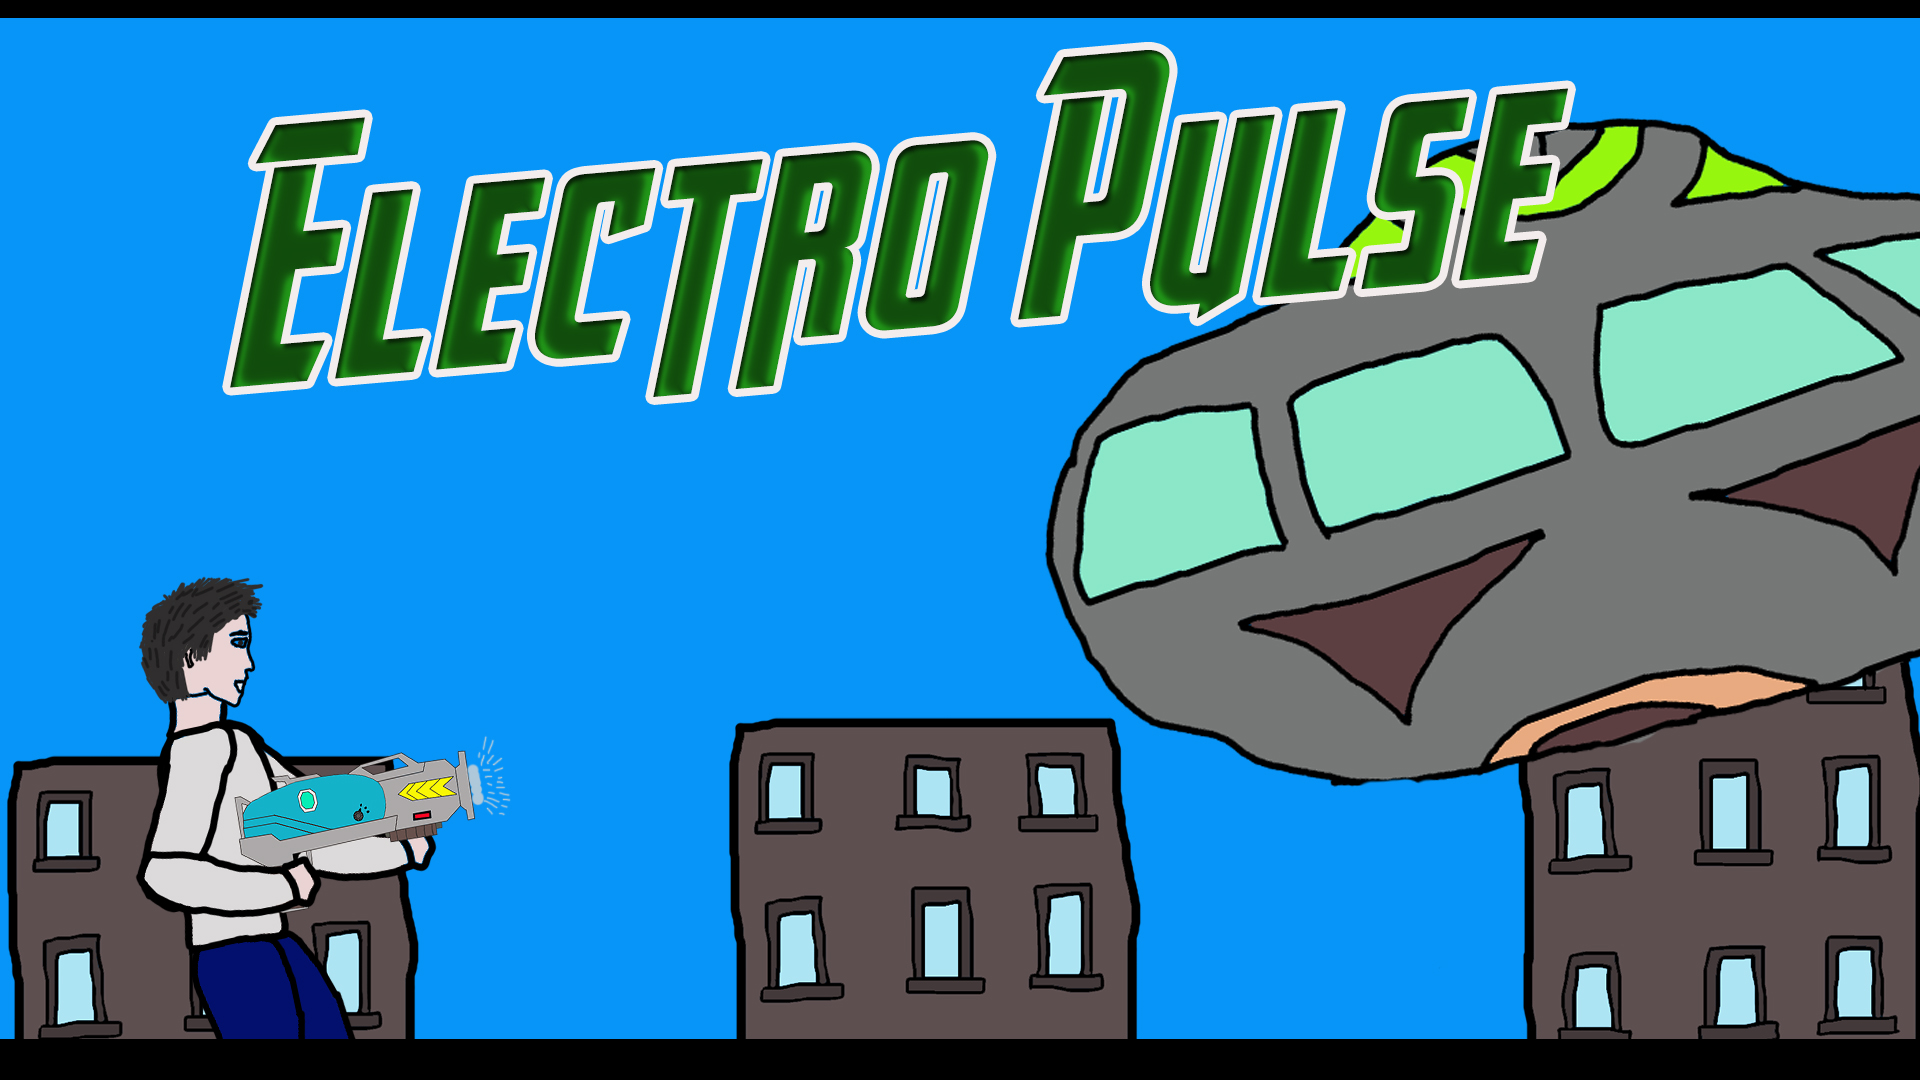 Electro Pulse